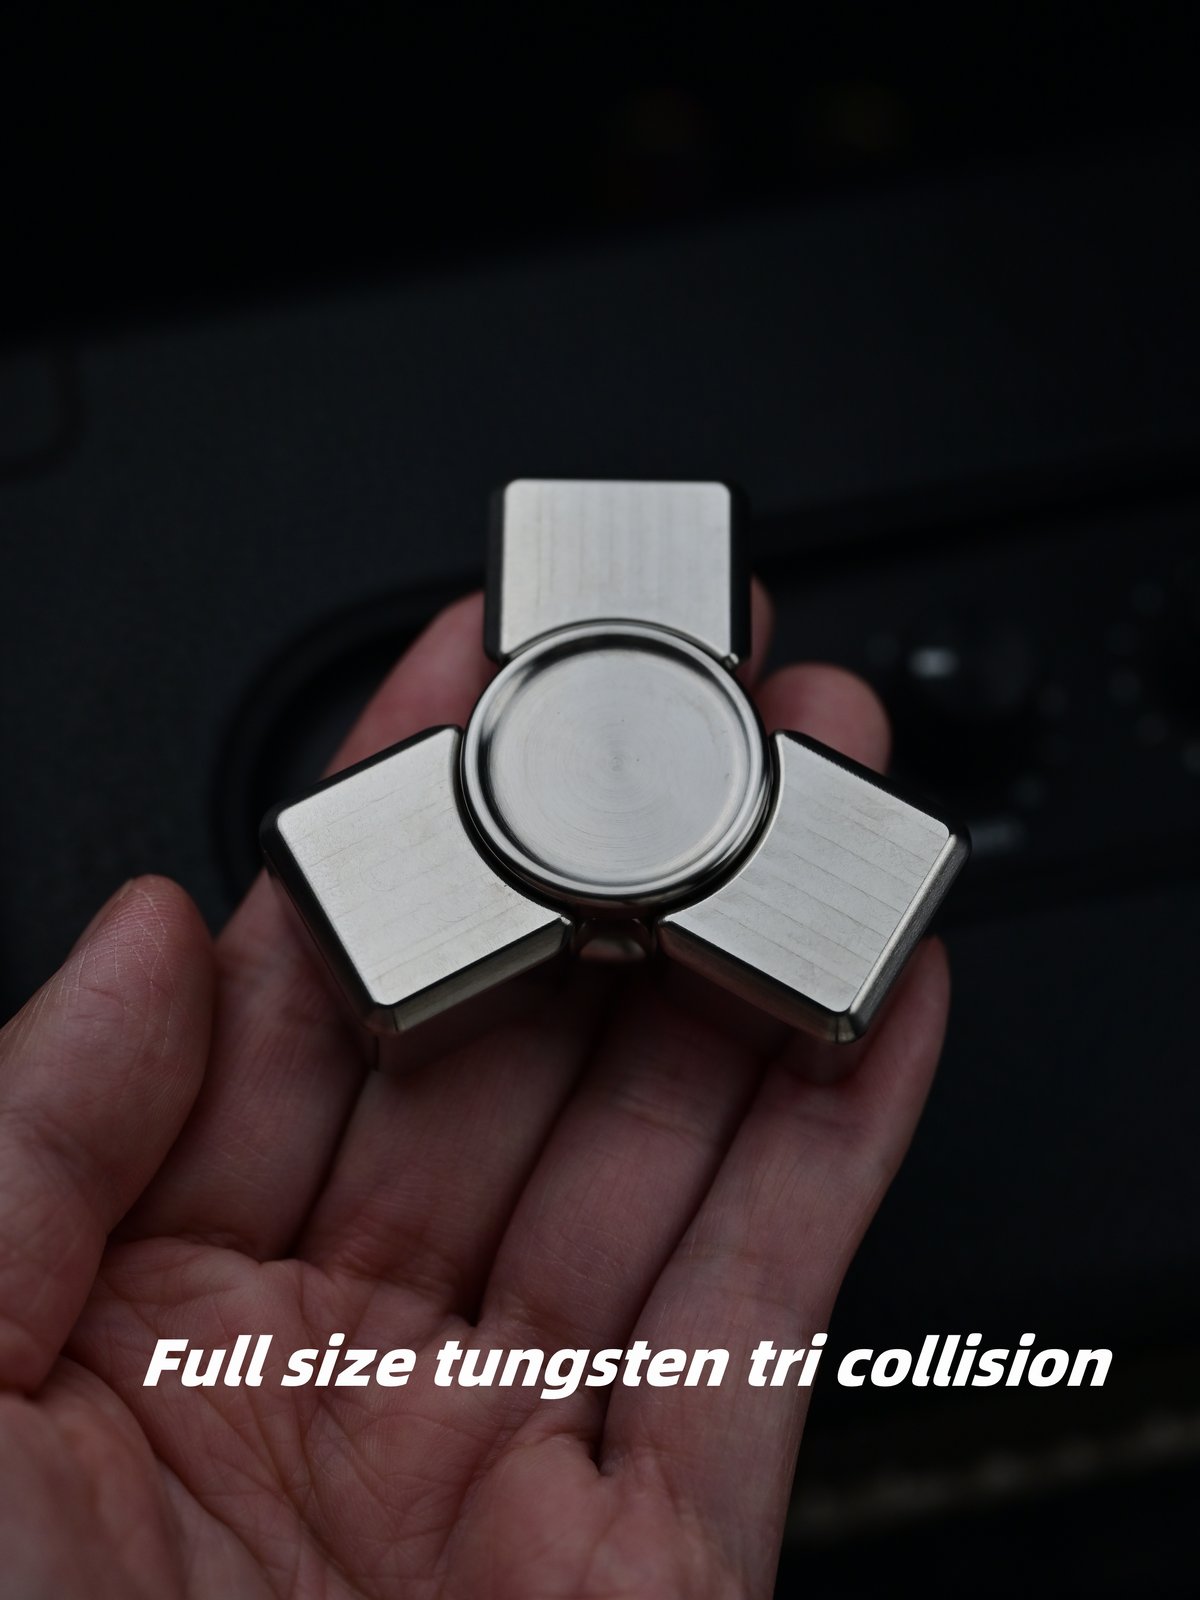 Tungsten Full-size tri collision fidget spinner